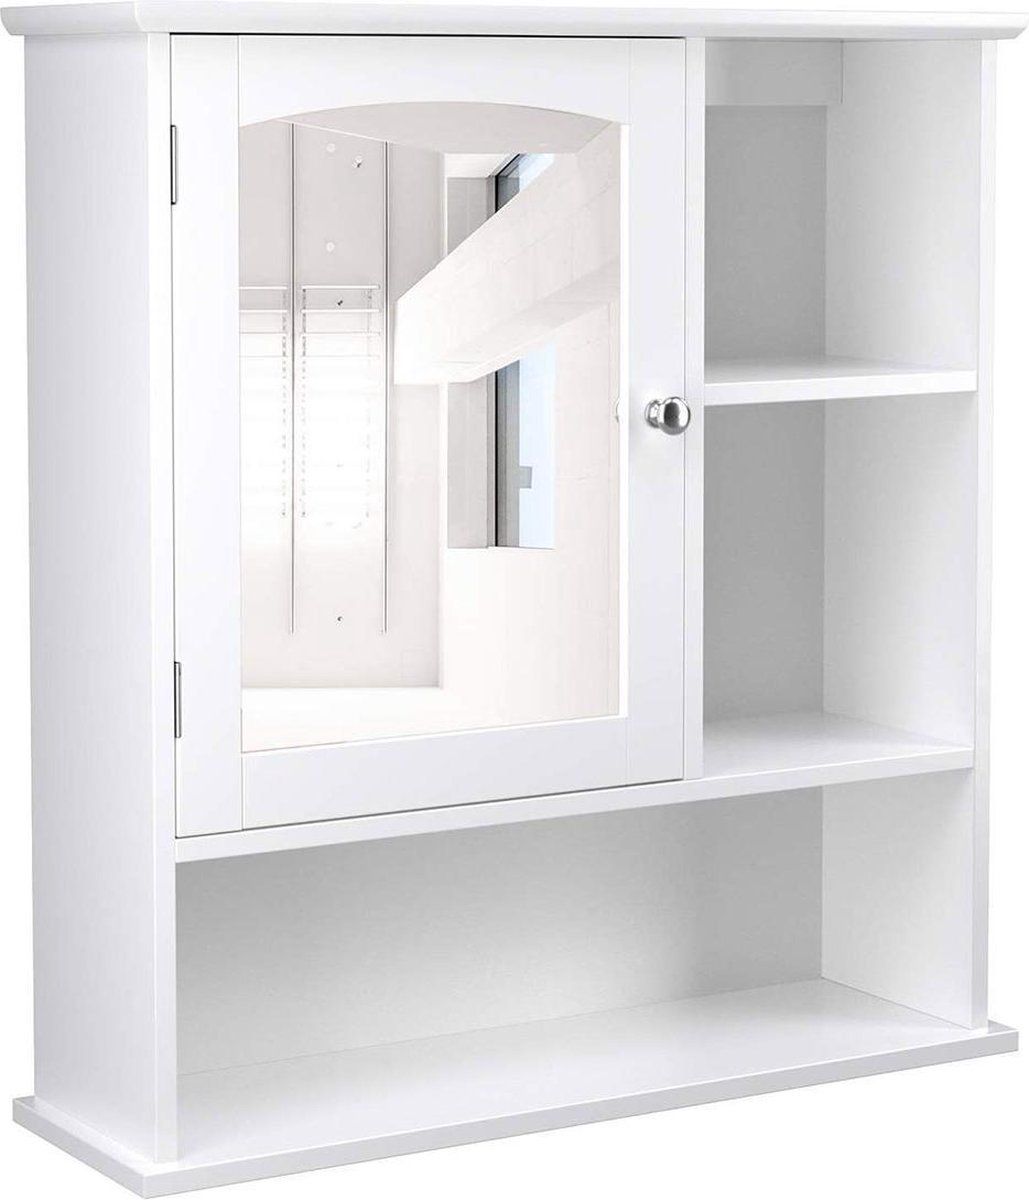 Merkloos Sans marque spiegelkast voor de badkamer badkamermeubel bovenkast met in hoogte verstelbare plank badkamermeubel met 3 open vakken 60 x 18 x 64 cm hout wit BBC23WT